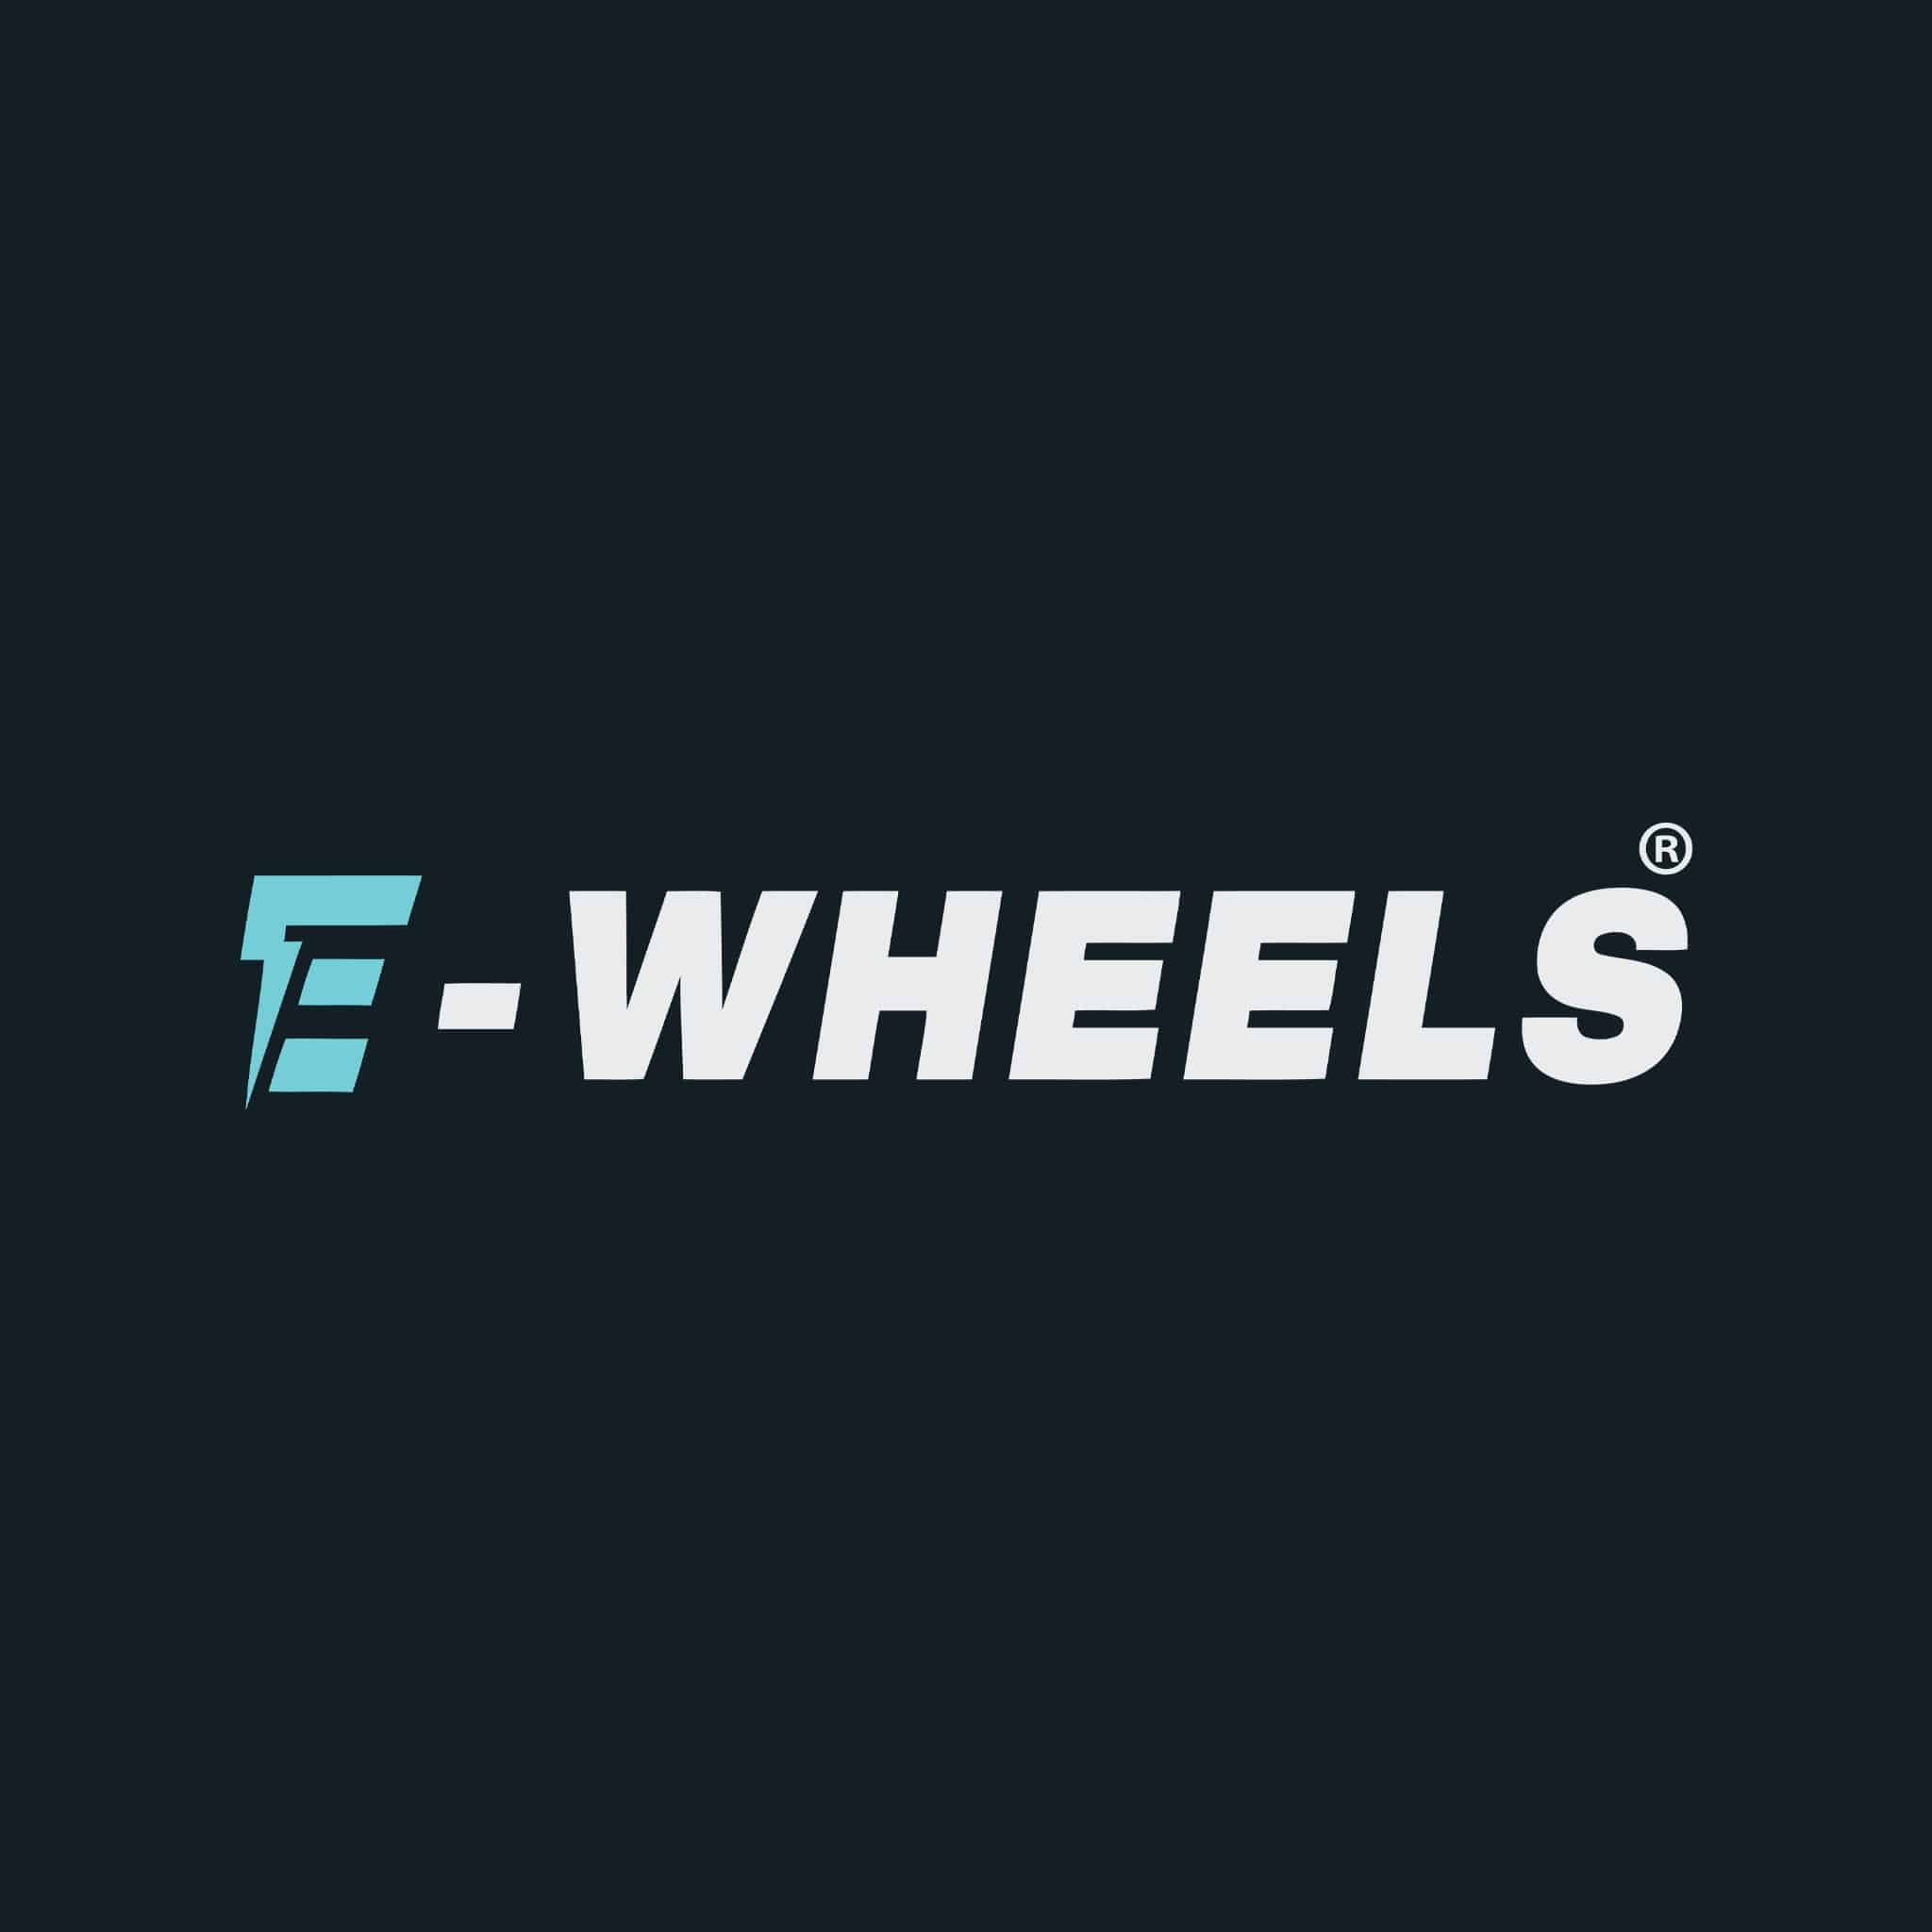 ewheels-logo